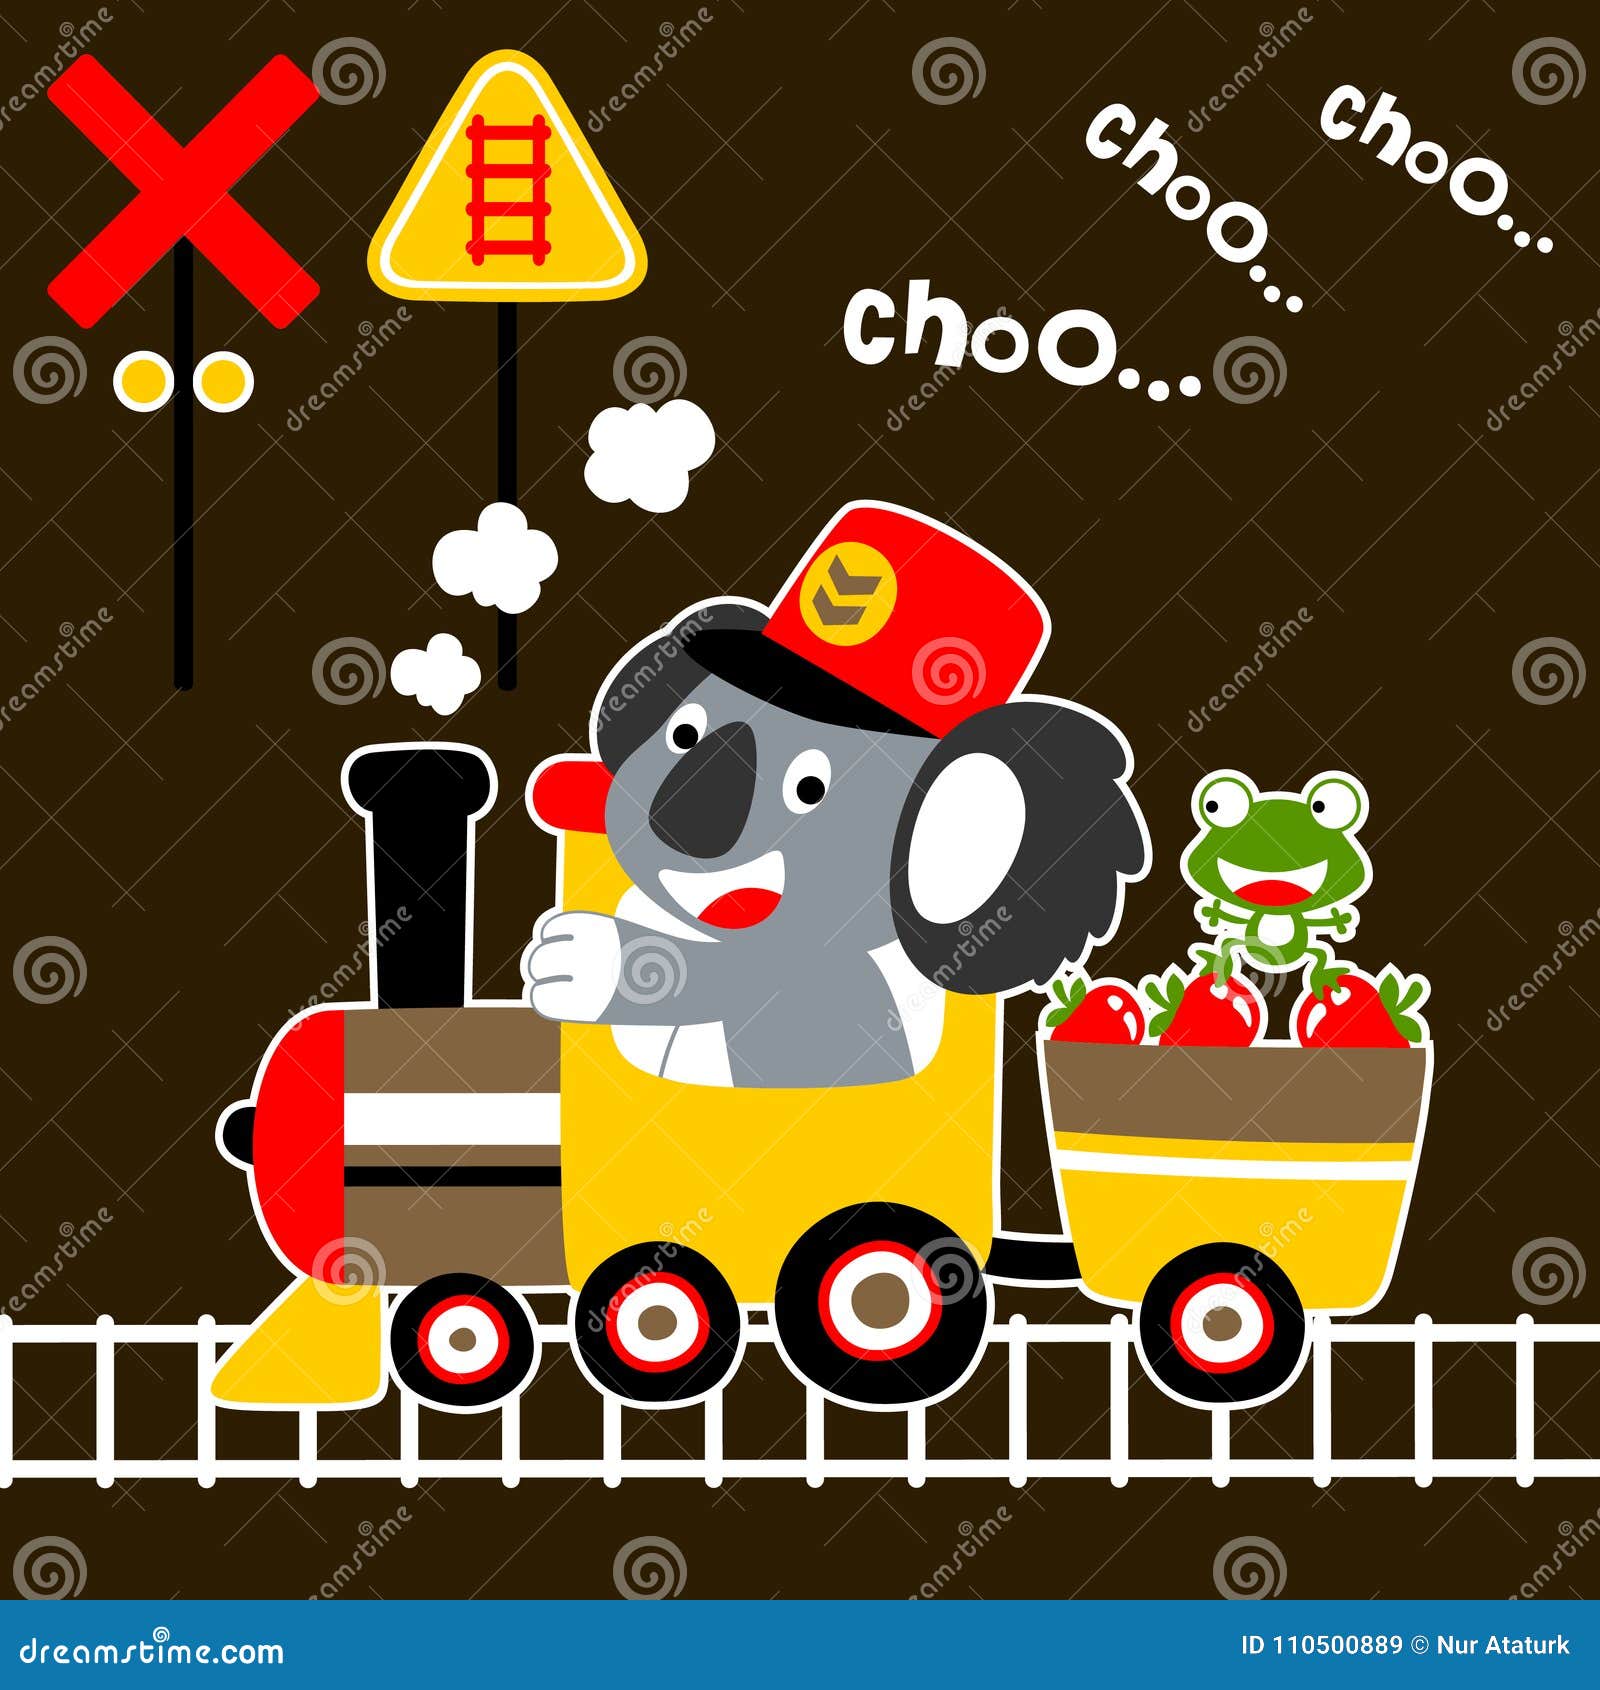 Choo Choo Train Stock Illustrations – 144 Choo Choo Train Stock  Illustrations, Vectors & Clipart - Dreamstime